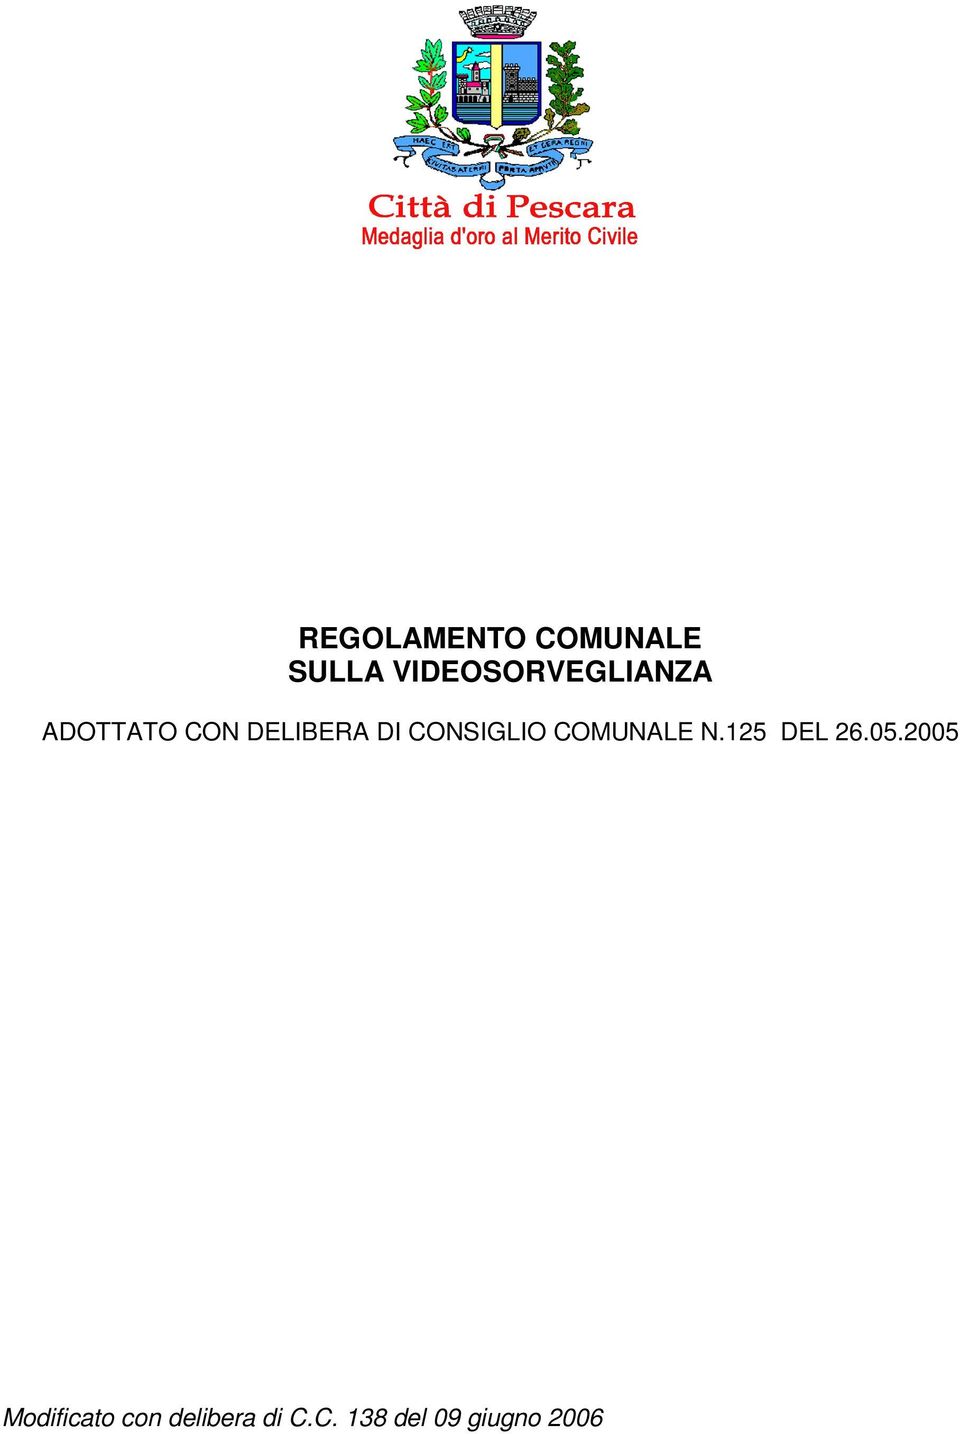 DI CONSIGLIO COMUNALE N.125 DEL 26.05.